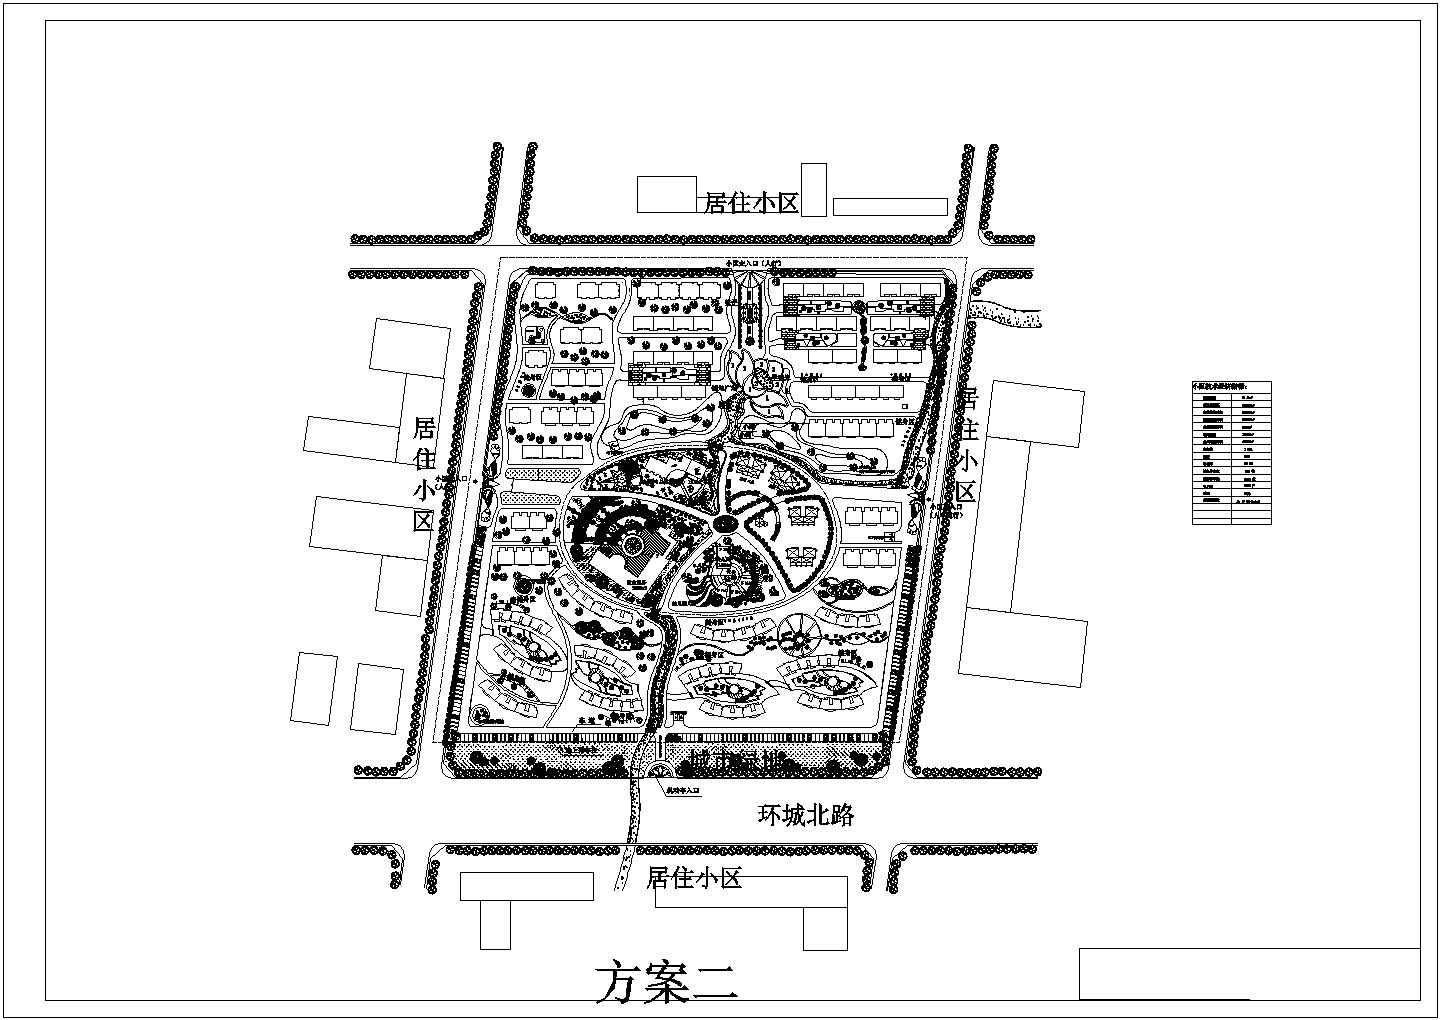 【苏州】某江南特色居住小区总平面规划设计方案图